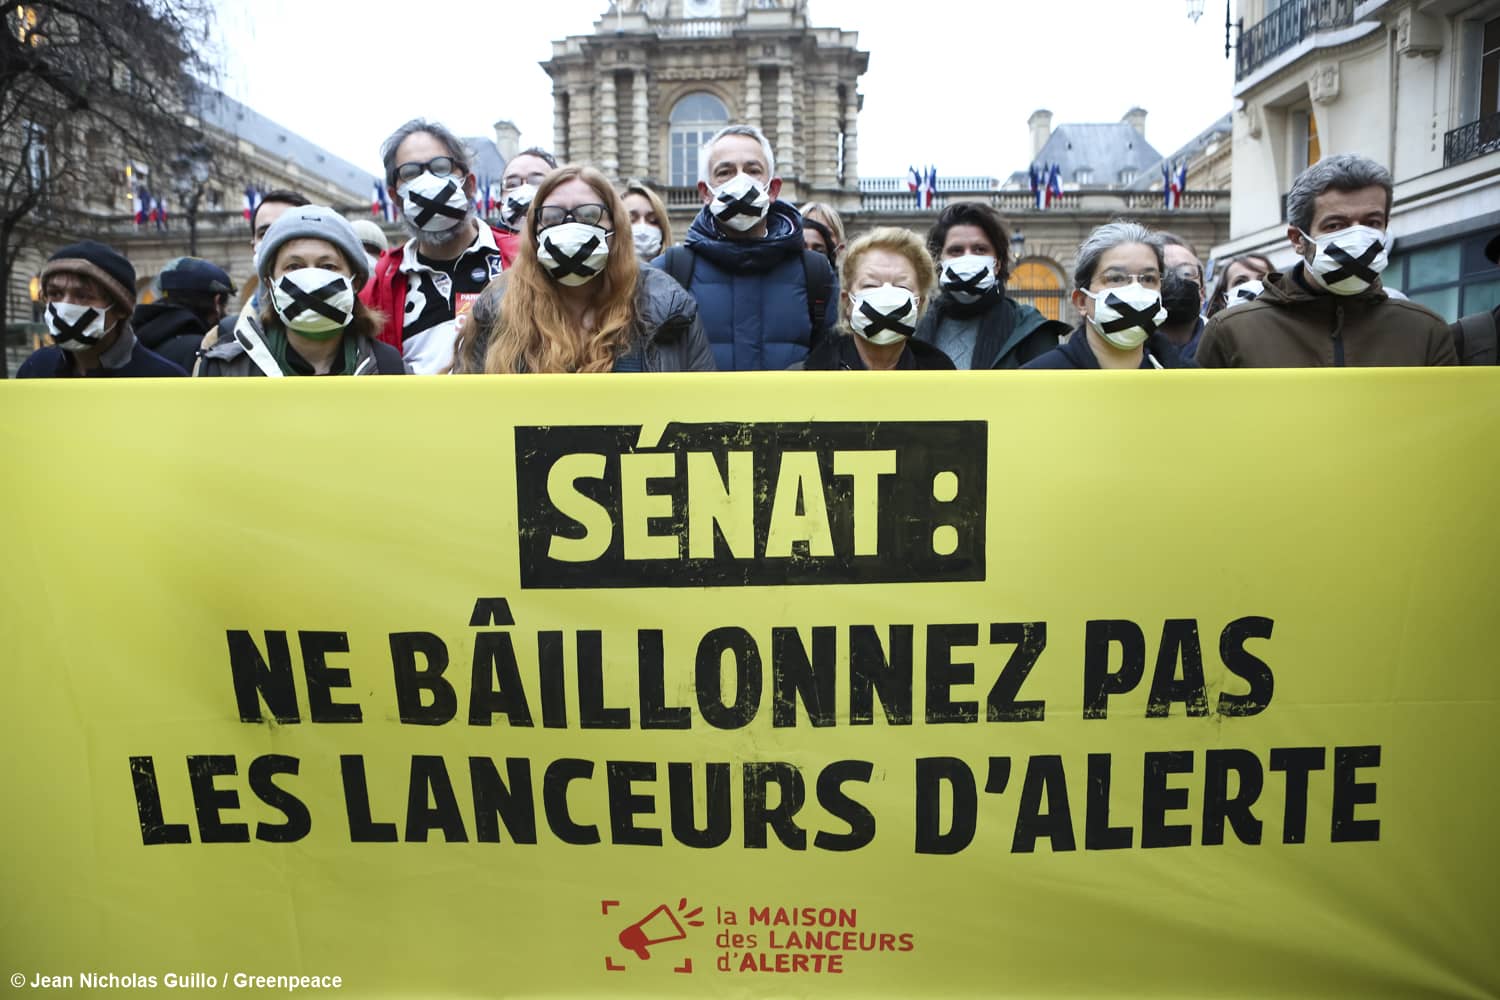 220111 - Splann ! Rassemblement Maison des lanceurs d'alerte Sénat Crédits Jean Nicholas Guillo by Greenpeace